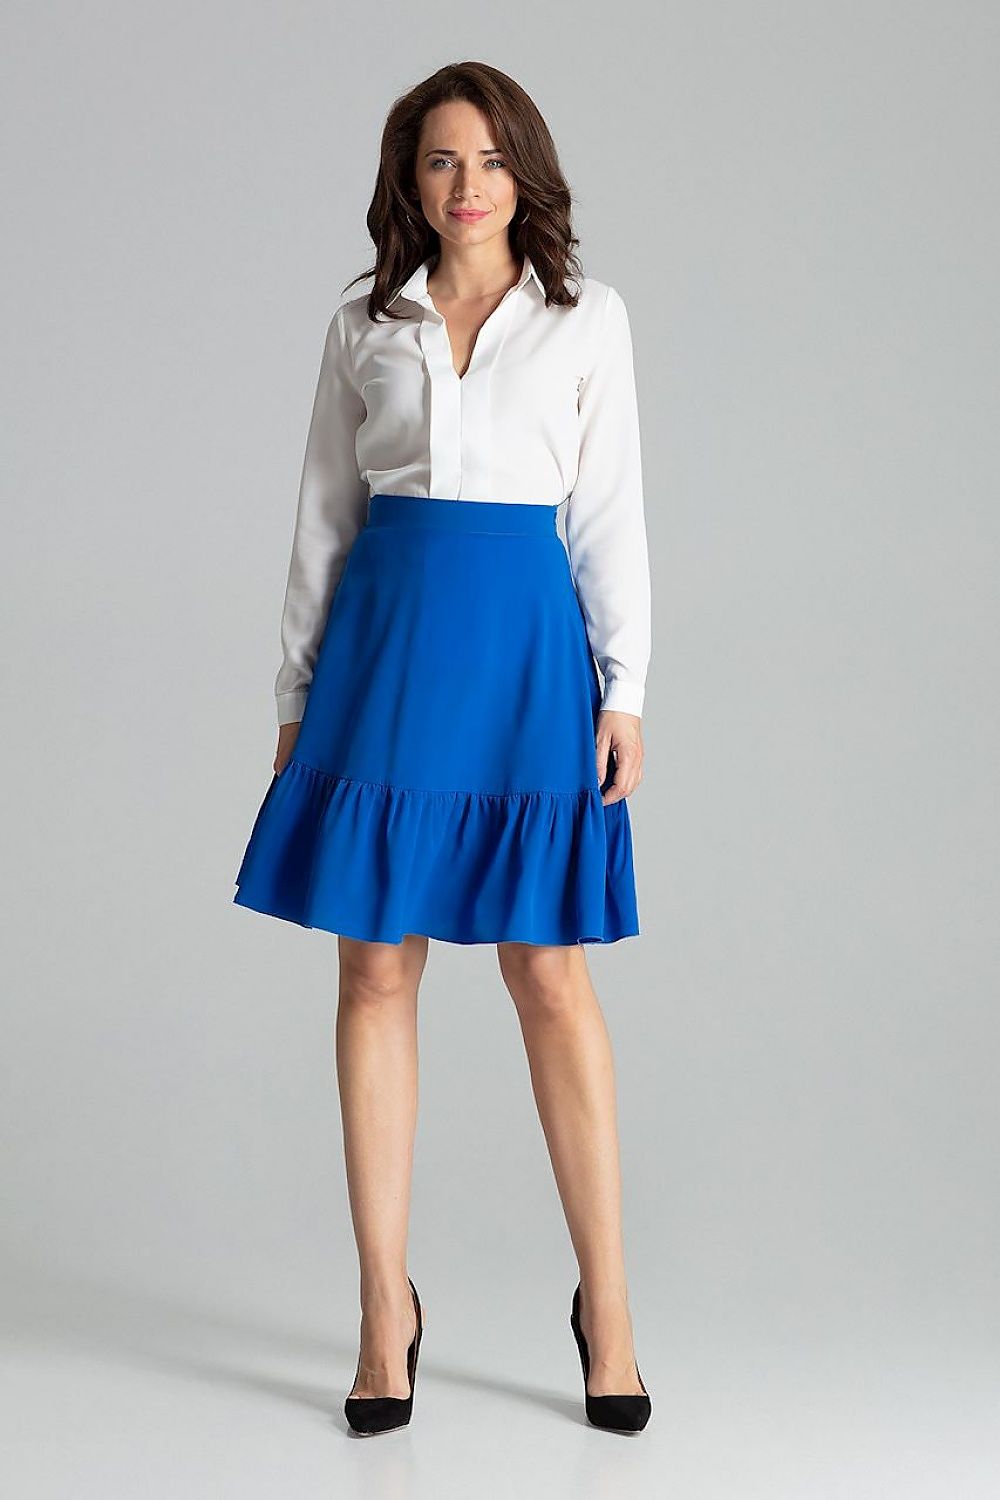 Jupe bleue courte à volant pour femme, style élégant et moderne, parfaite pour un look chic.